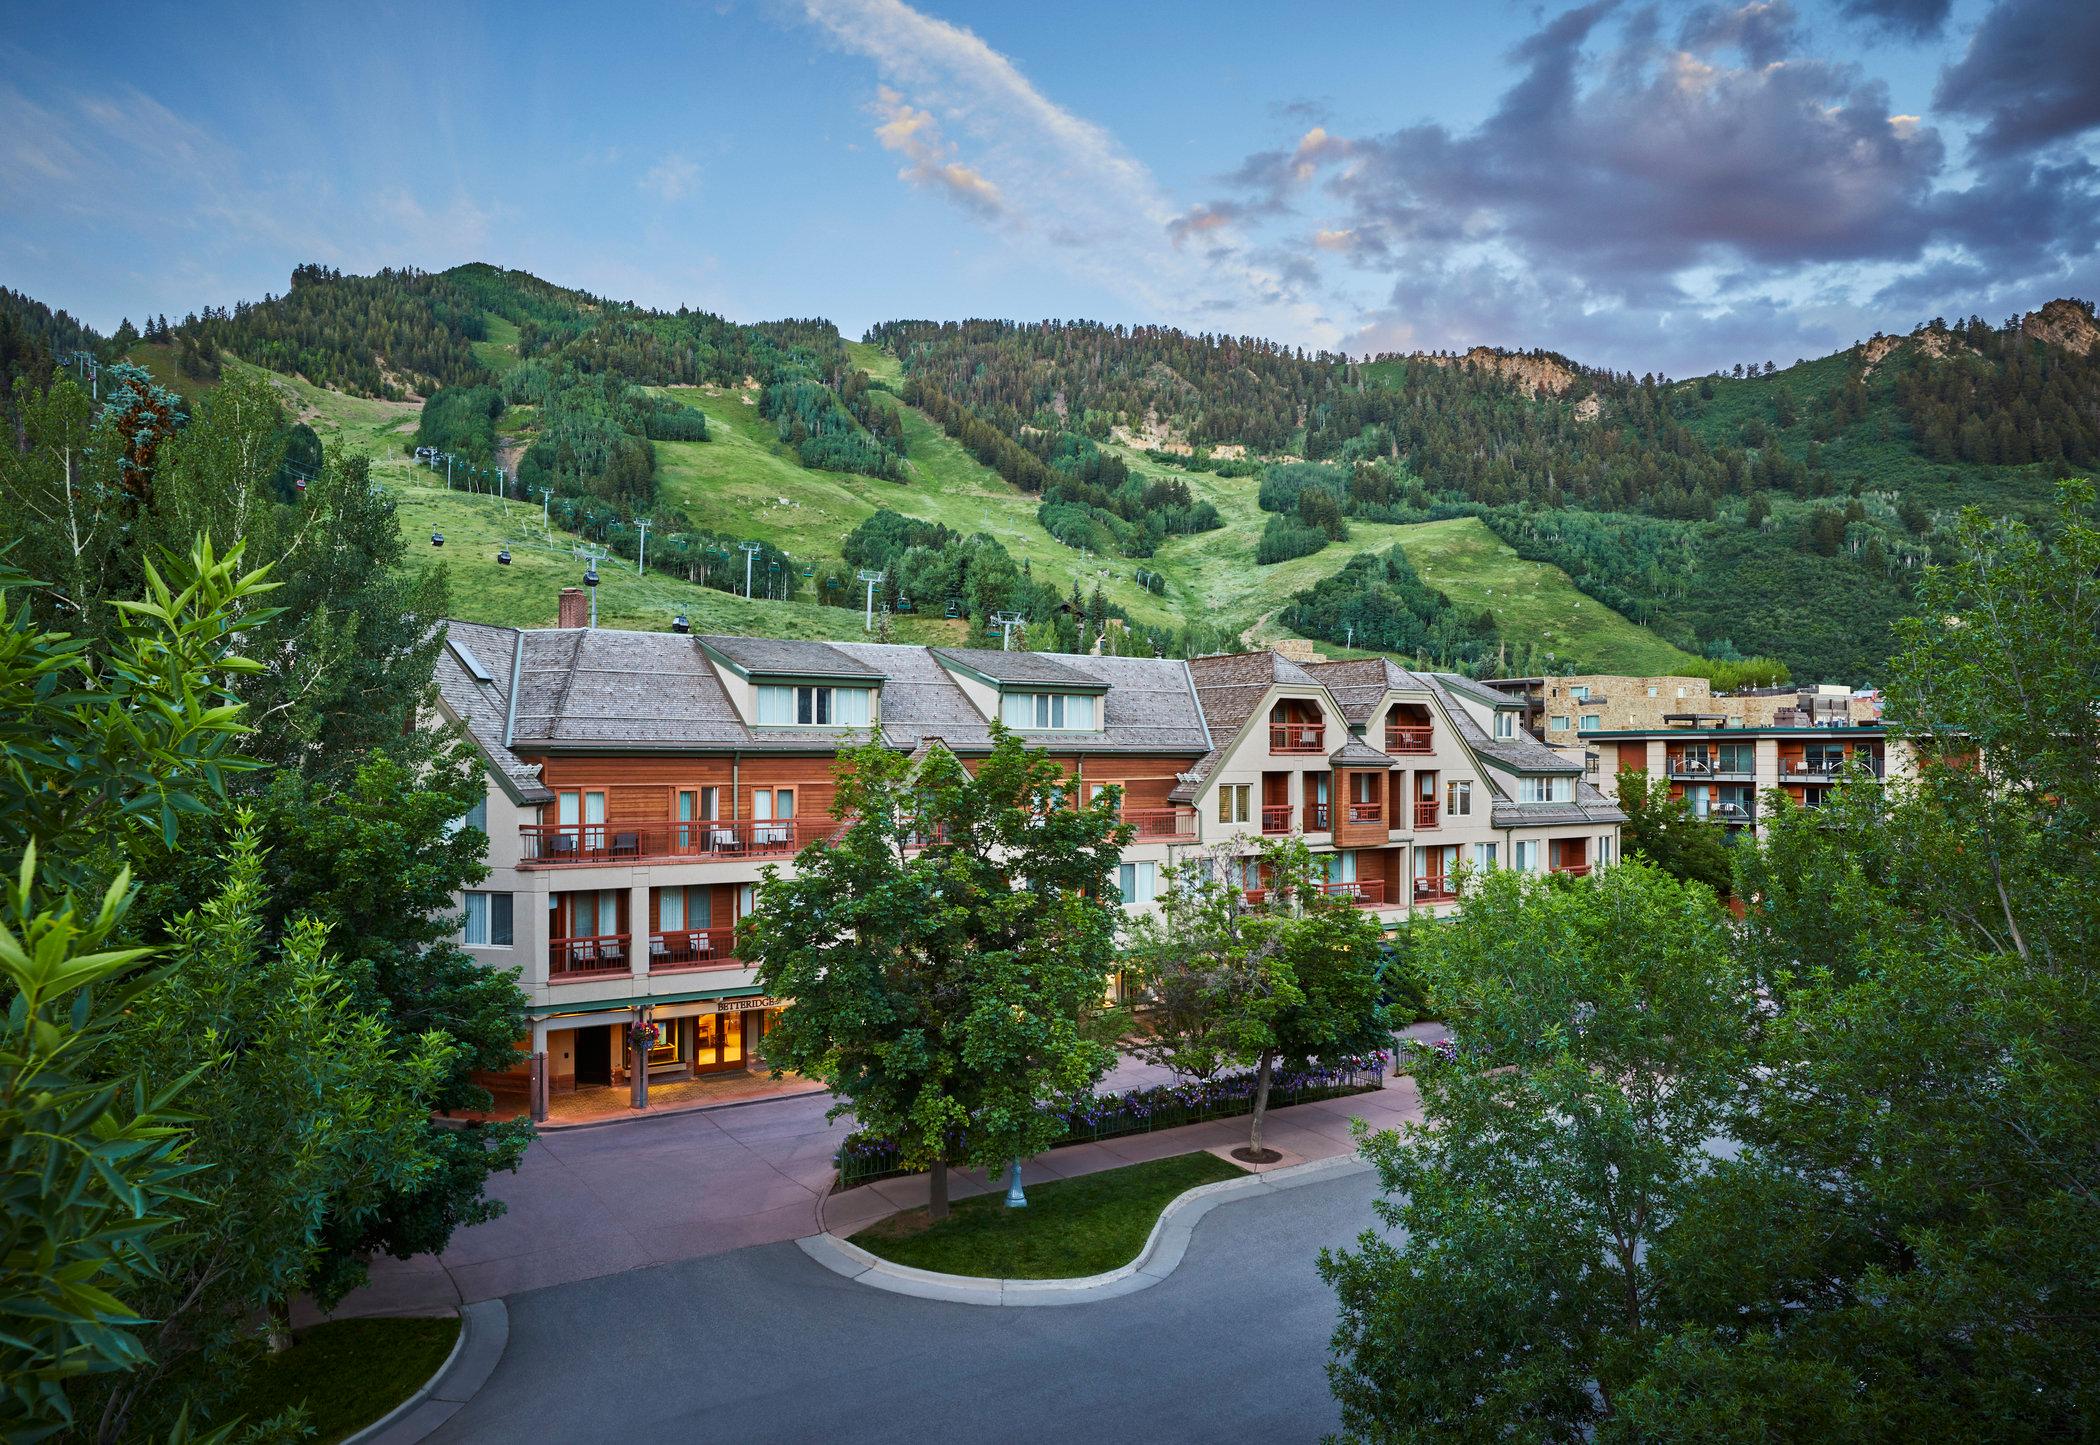 Aspen Hotels and Lodges